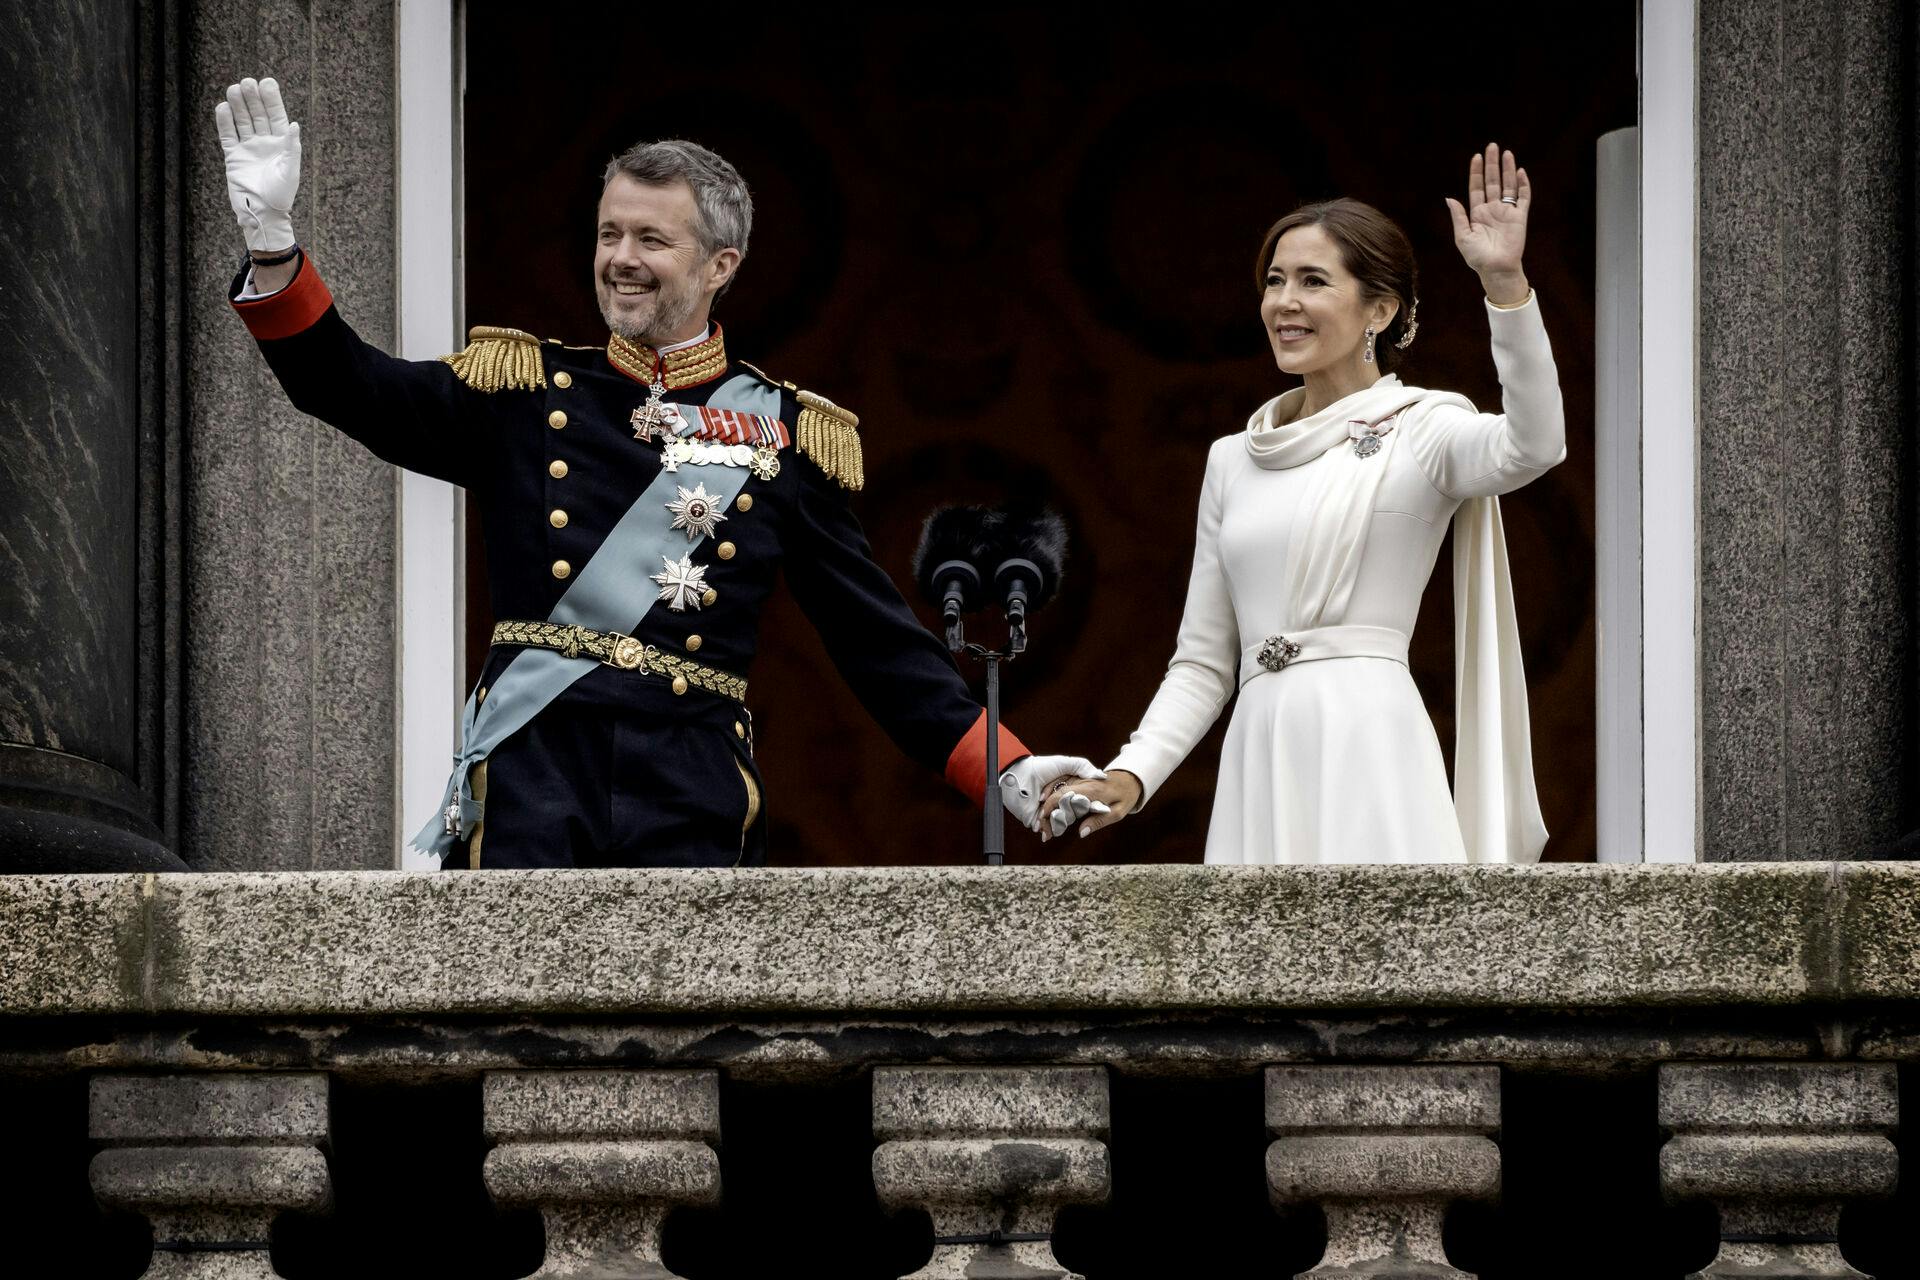 Kong Frederik 10. udråbes til konge fra balkonen på Christiansborg efter dronning Margrethes abdikation. Kong Frederik 10 på balkonen sammen med dronning Mary.